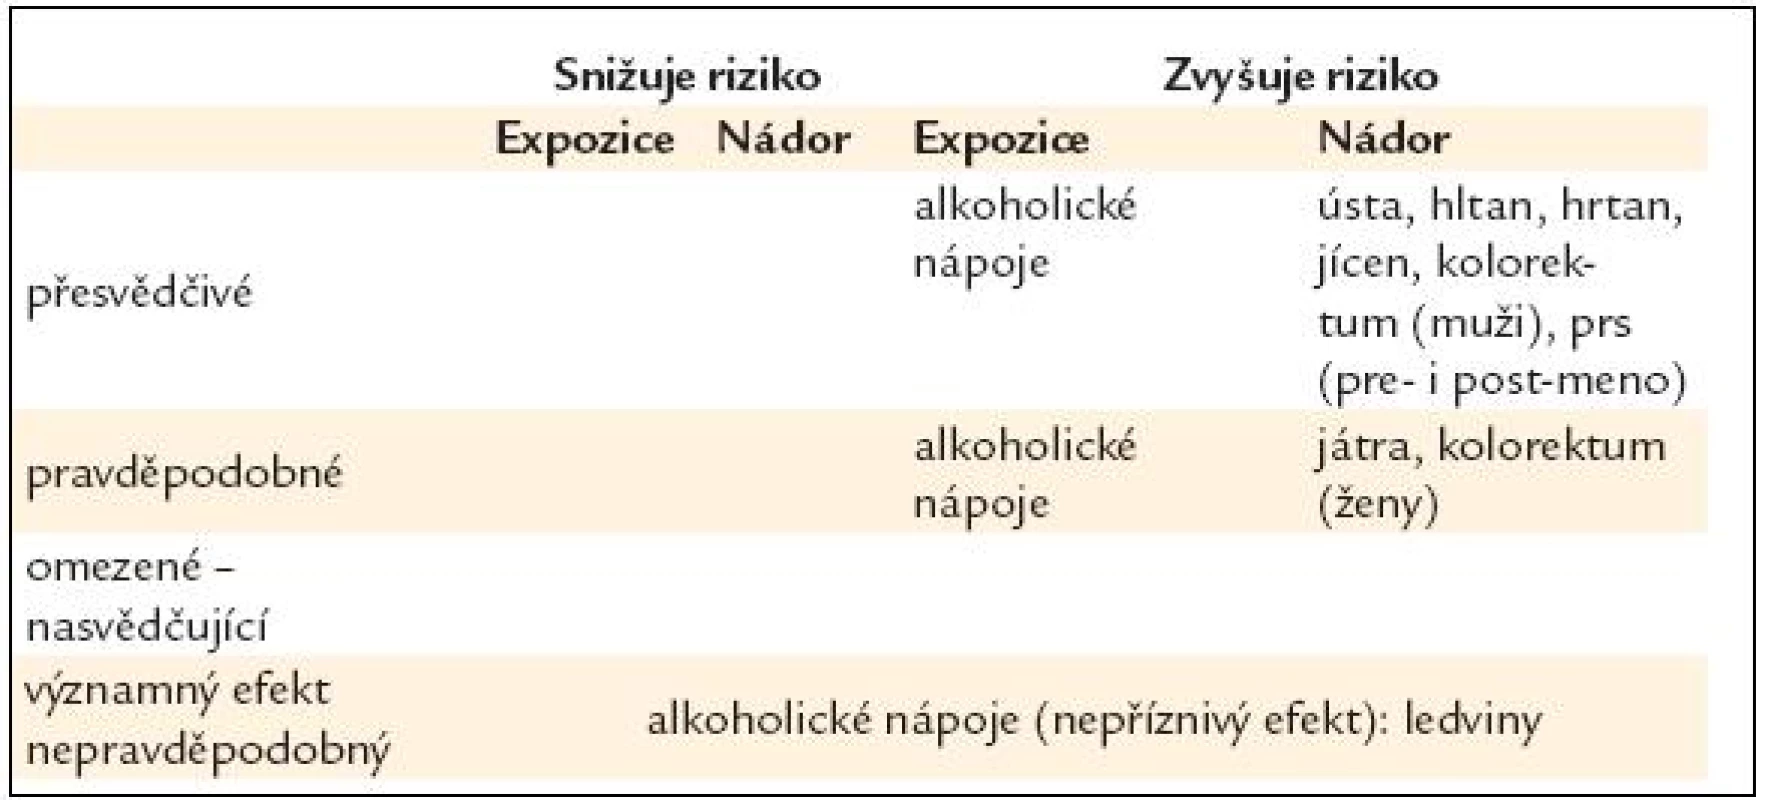 Alkoholické nápoje – vliv na riziko rakoviny [16].